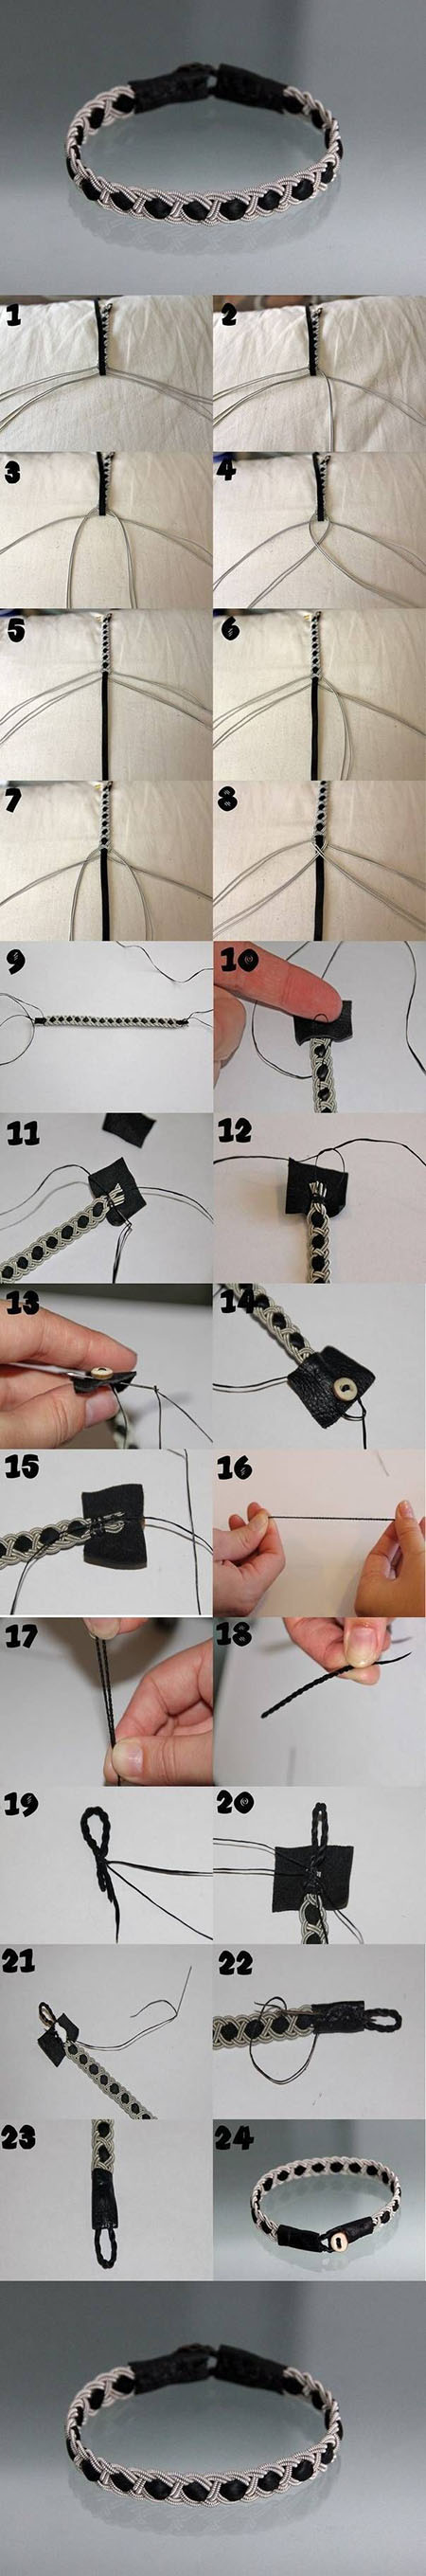 5 DIY Custom Made Bracelets3c01e8e4